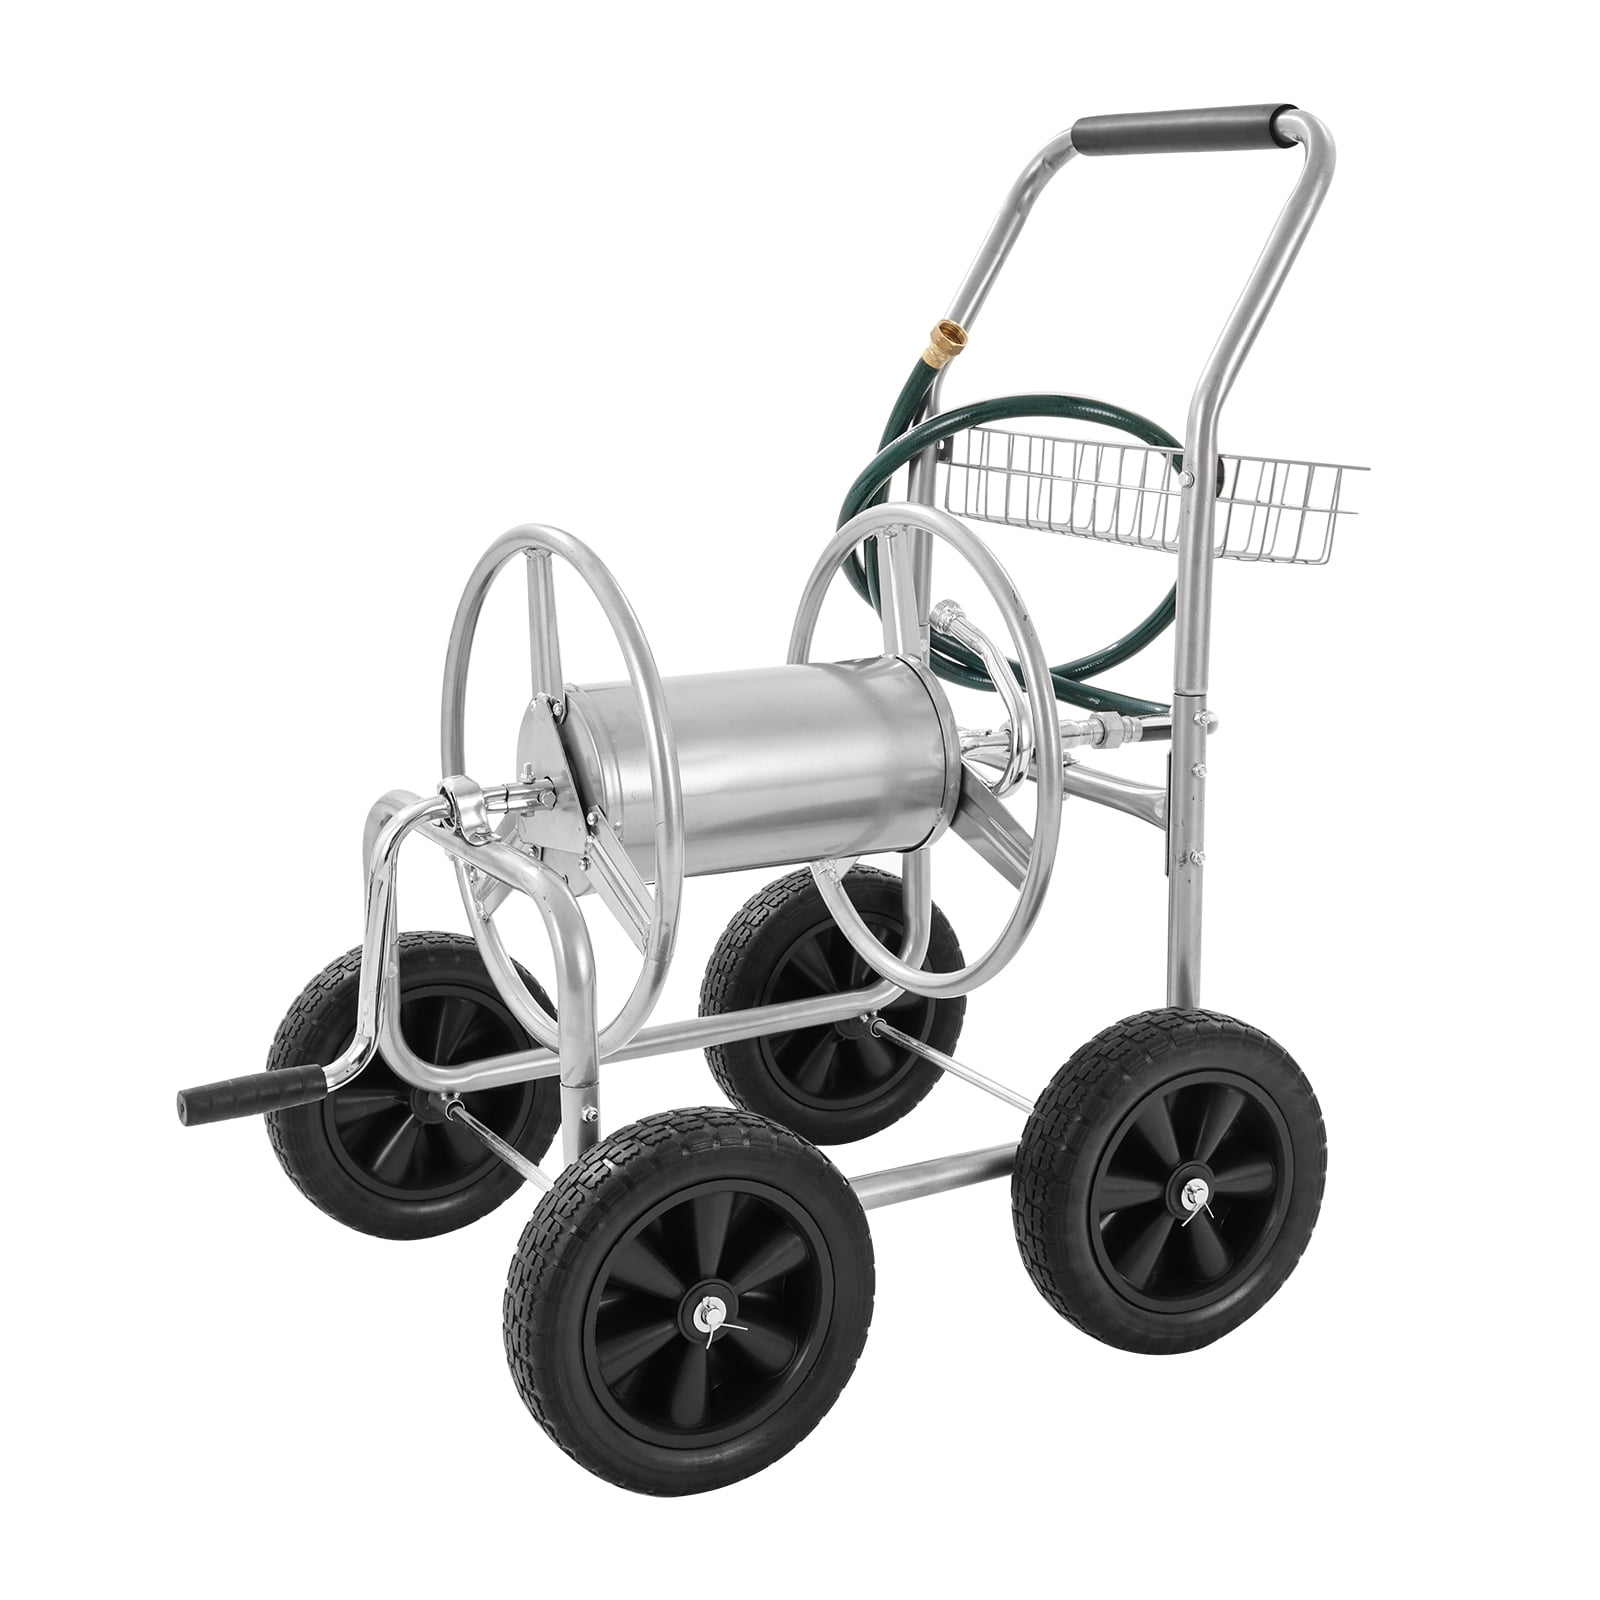 Genuine Ames WHEEL Hose Reel Easy Water Cart Plastic Crank Handle